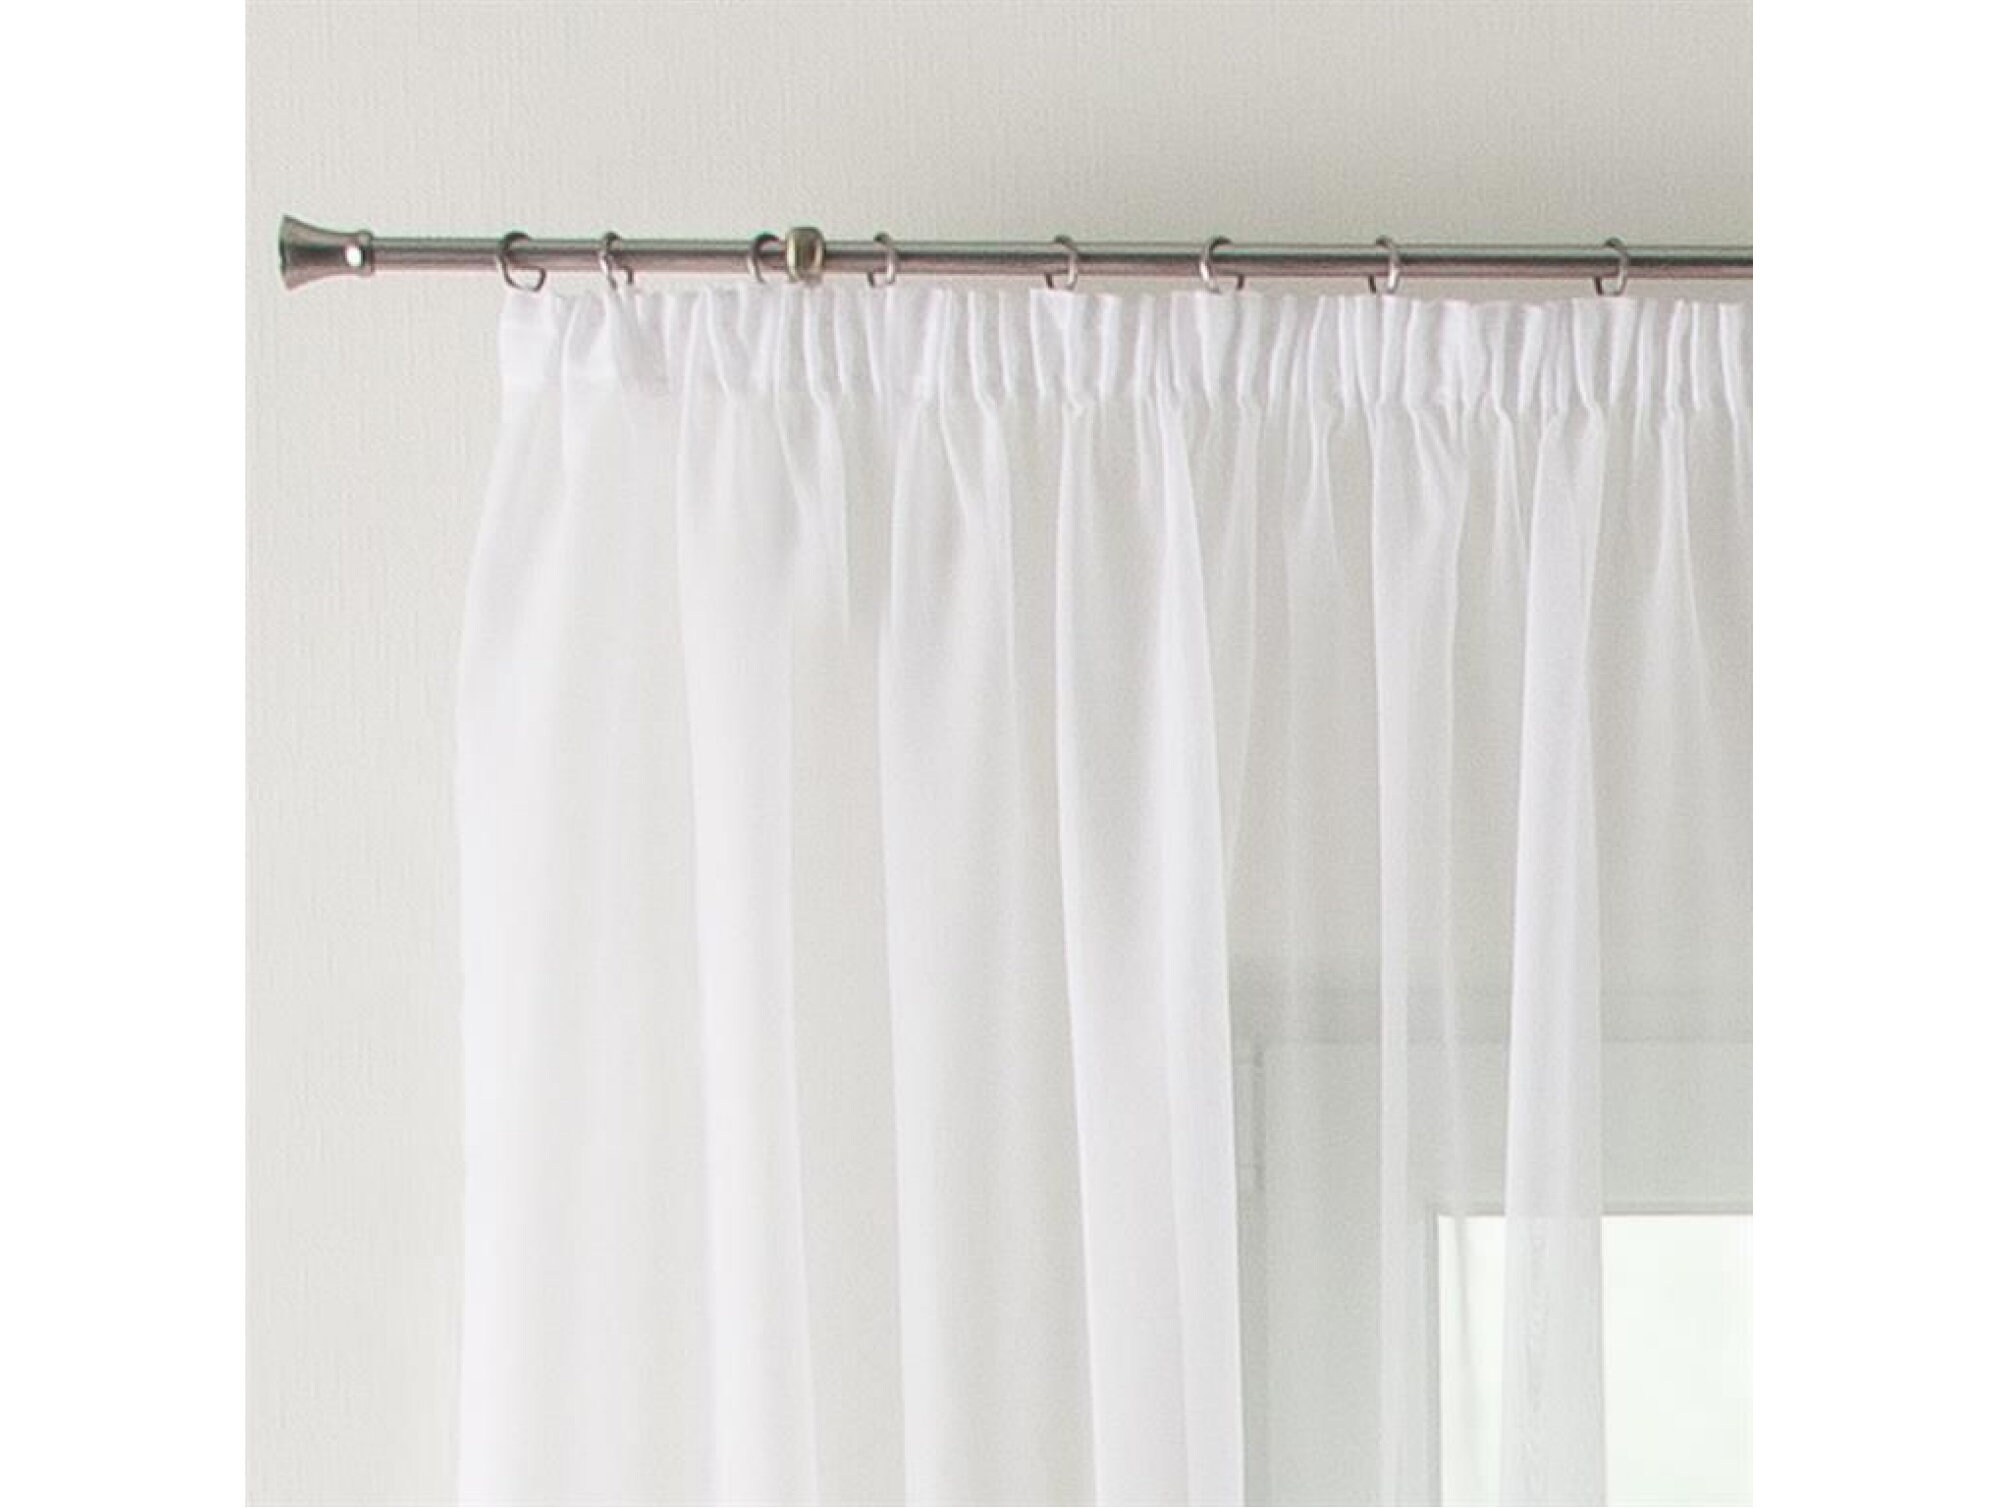 Vorhang Voile mit Faltenband Weiß und Ecru Gardine Fenstervorhang  Flächenvorhang Kräuselband transparent luftig